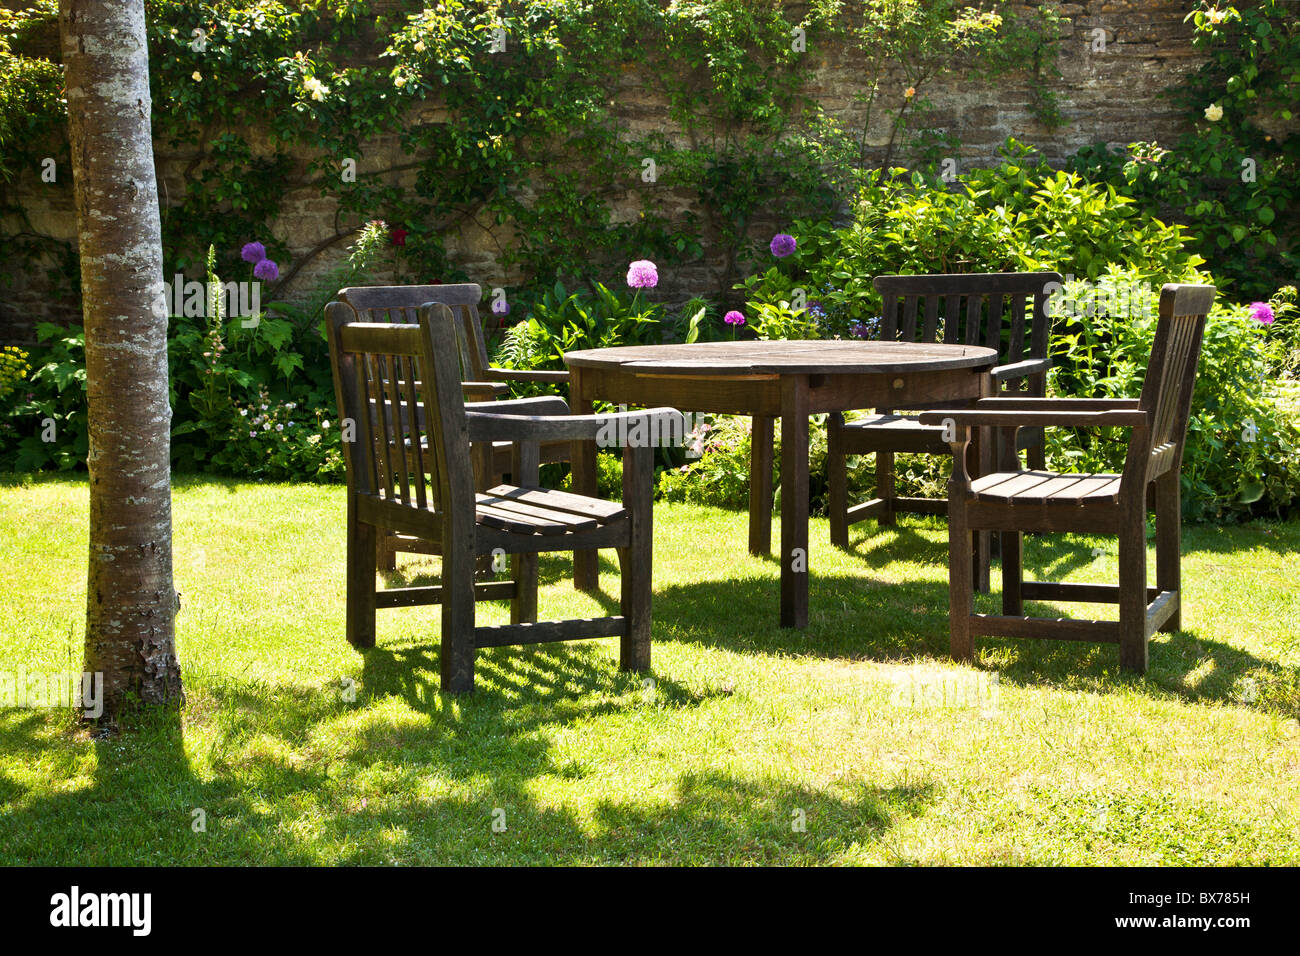 Gartenmöbel aus Holz in einer entspannenden Ecke von einem ummauerten englischen Country-Sommergarten Stockfoto